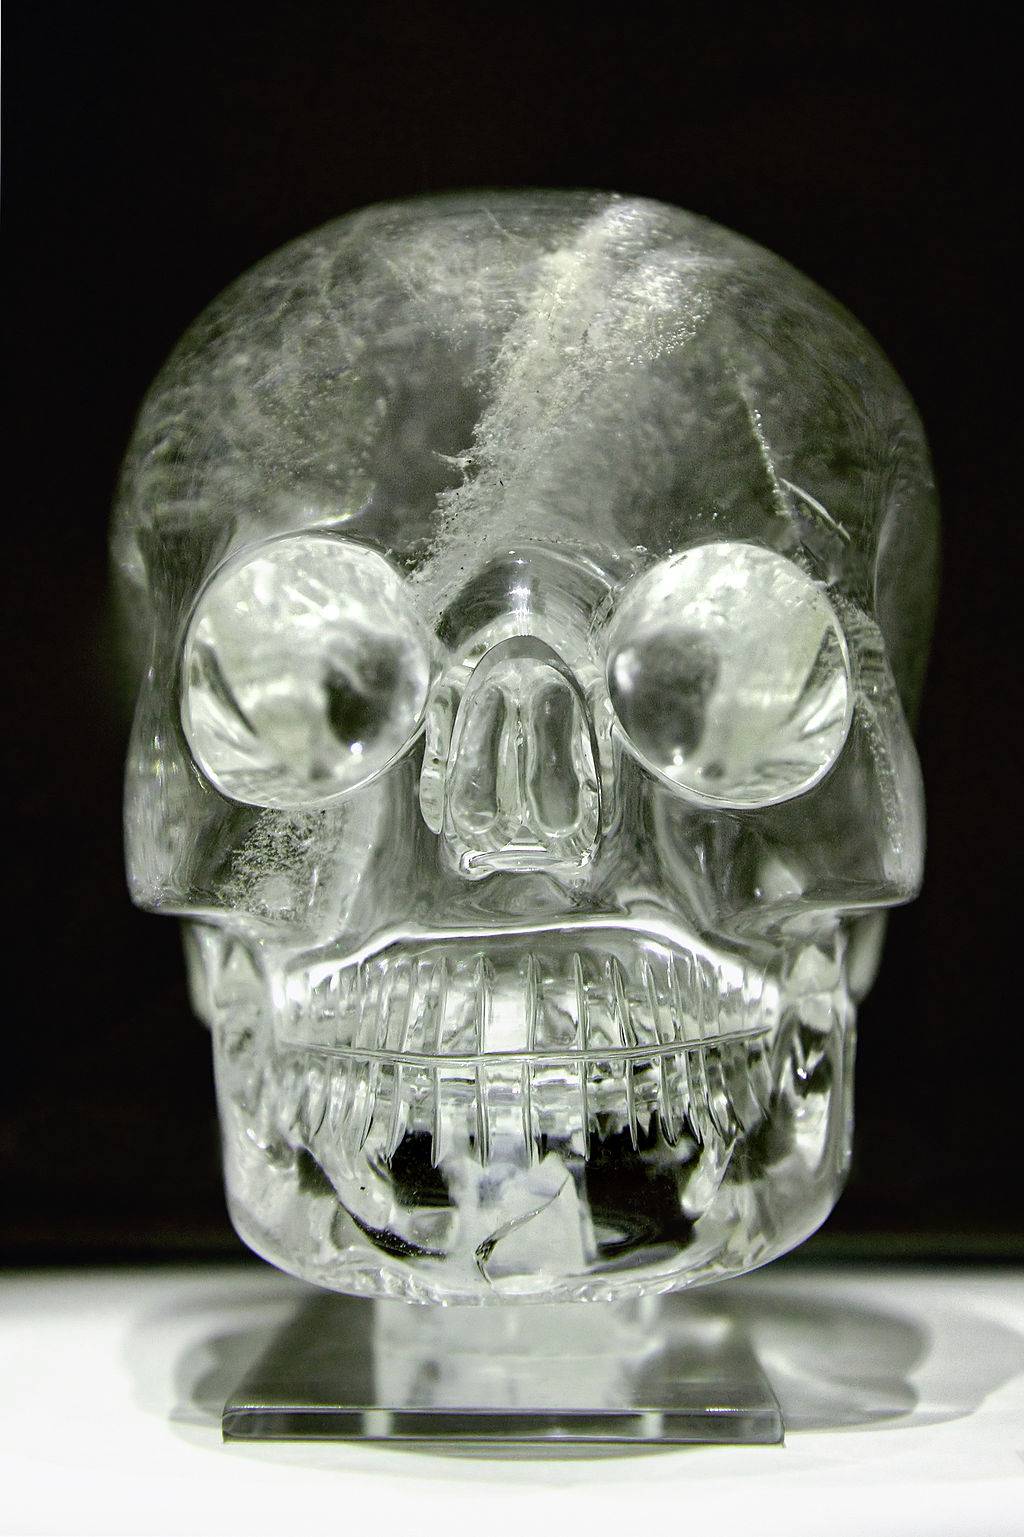 Een kristallen schedel uit de collectie van het British Museum